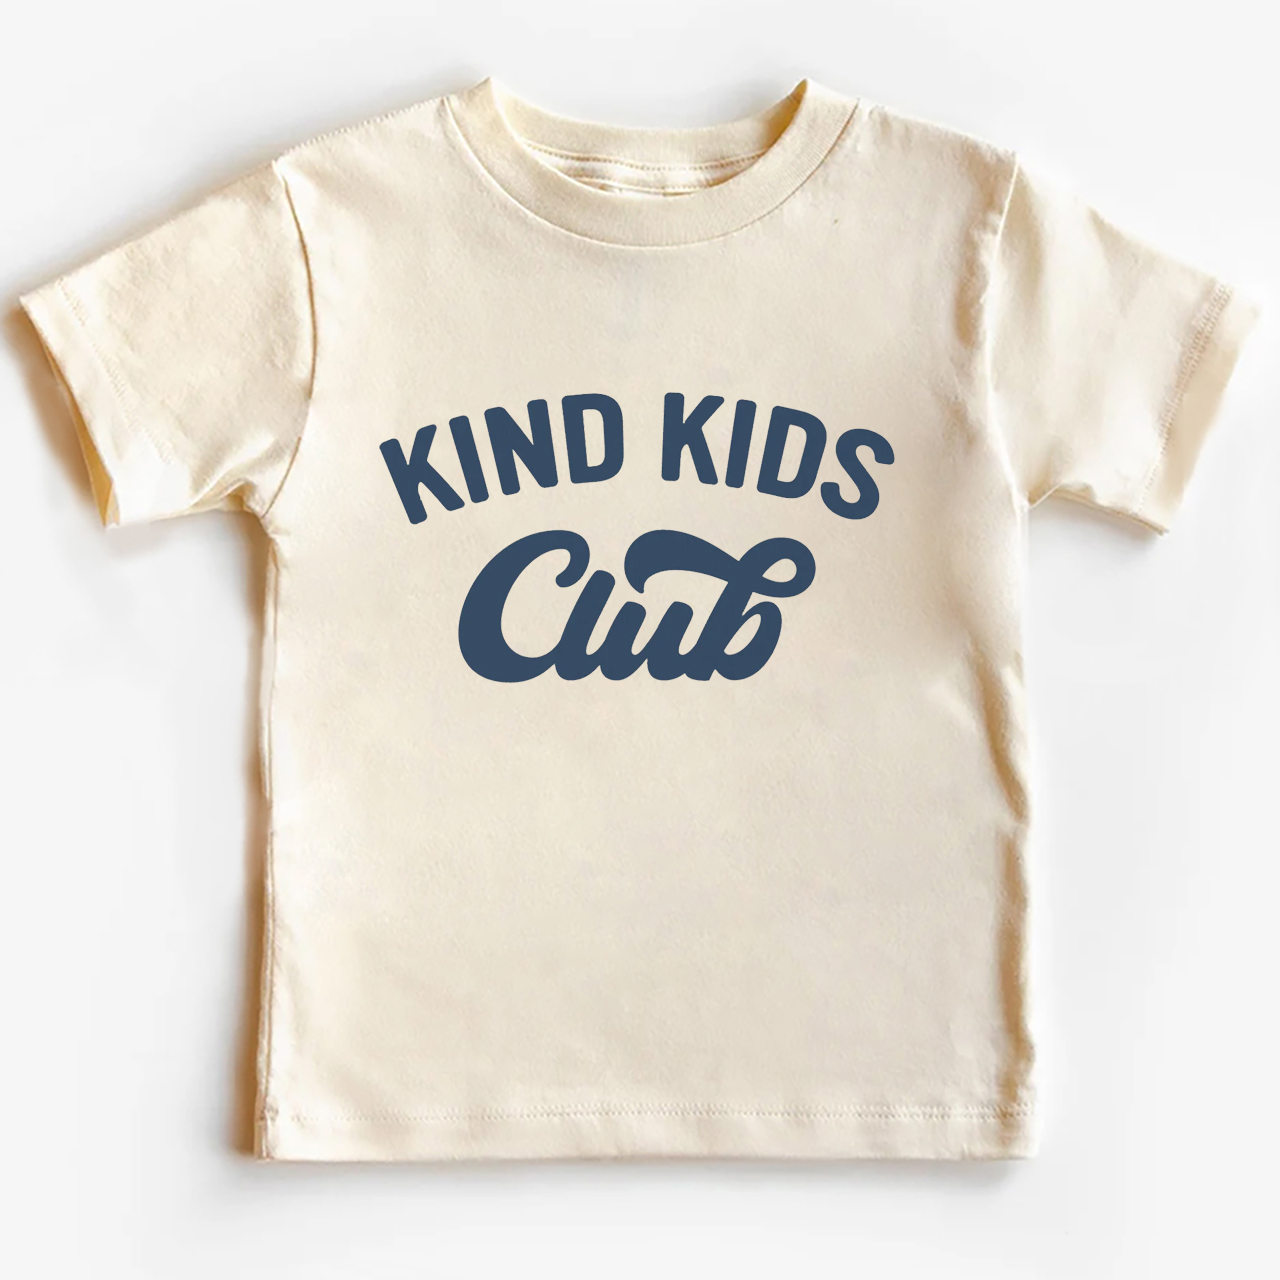 Kind Kids Club Shirts For School Kids